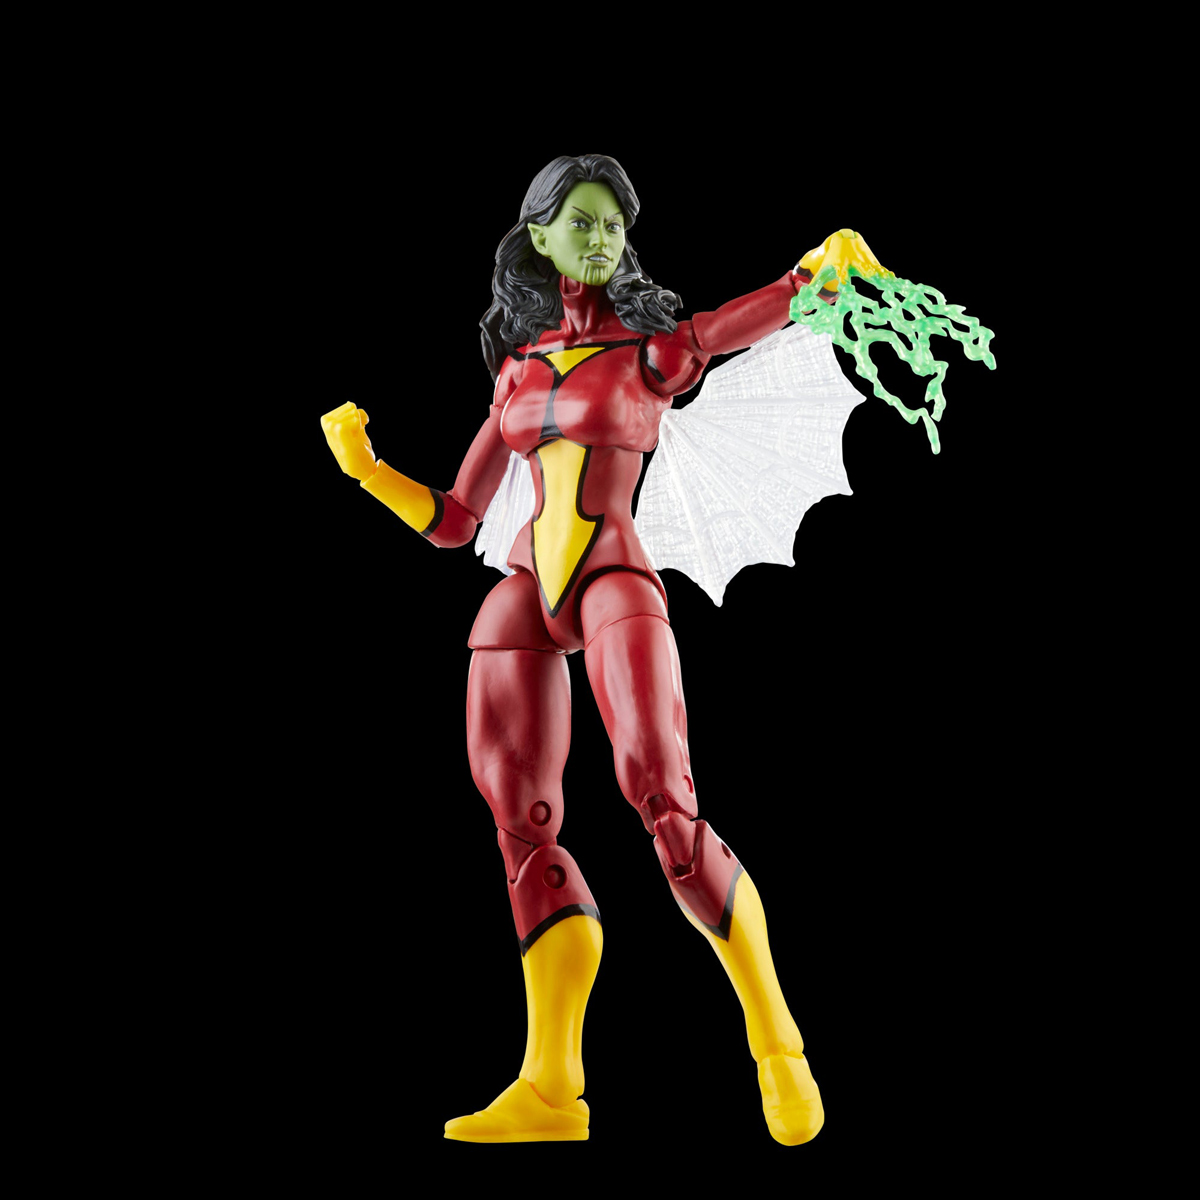 Marvel-Legends-Skrull-Queen-and-Super-Skrull-Action-Figures-7